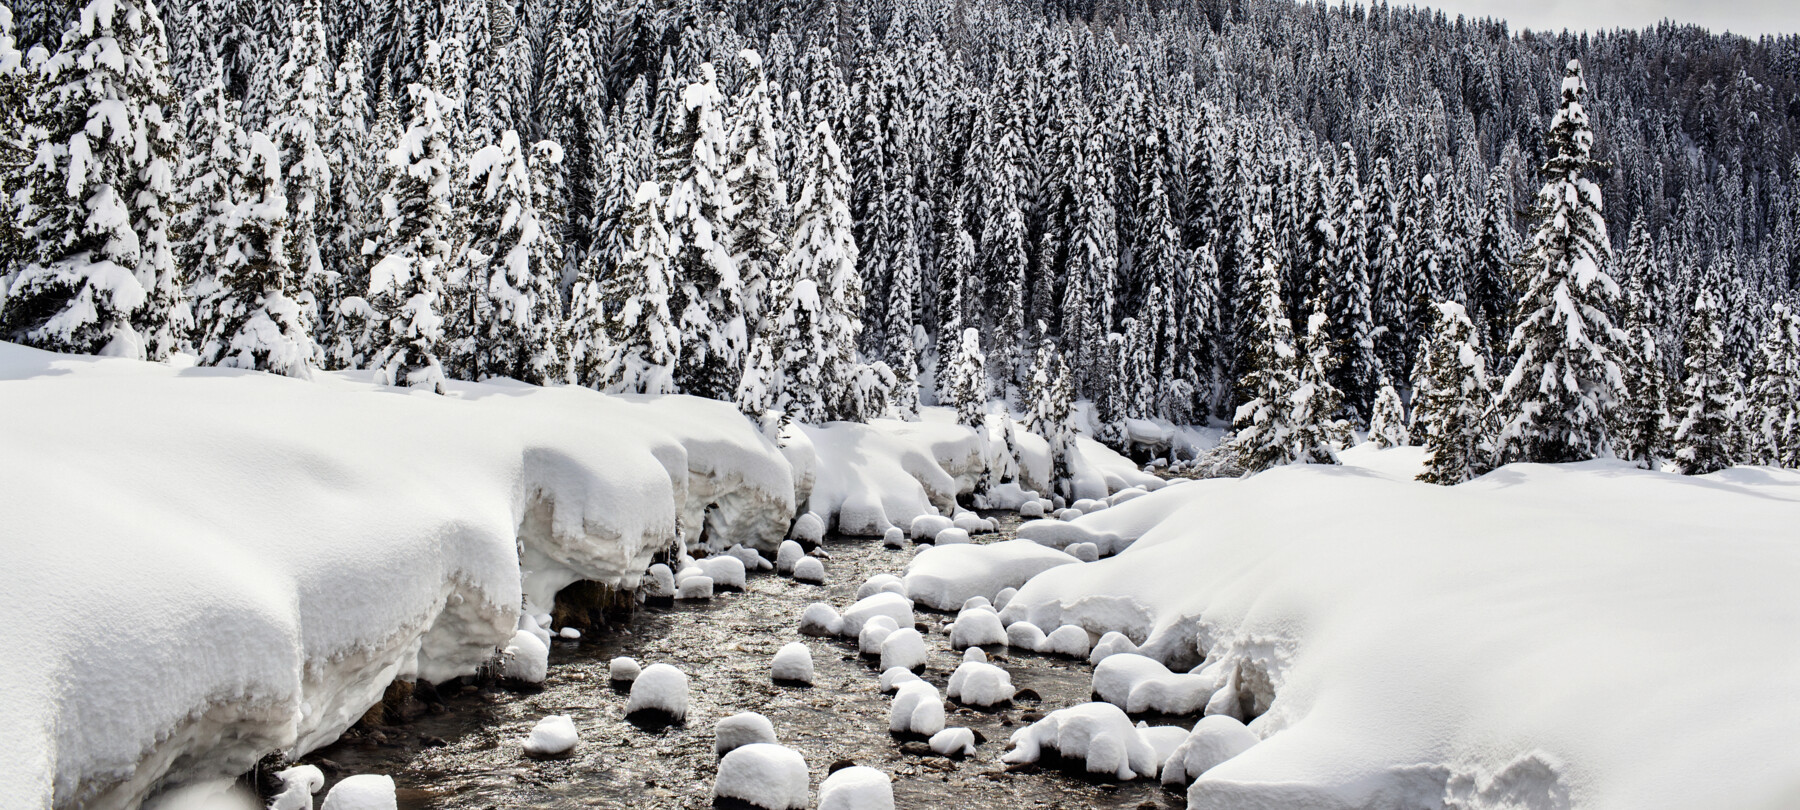 Was hört man in den Wäldern der Dolomiten im Winter?